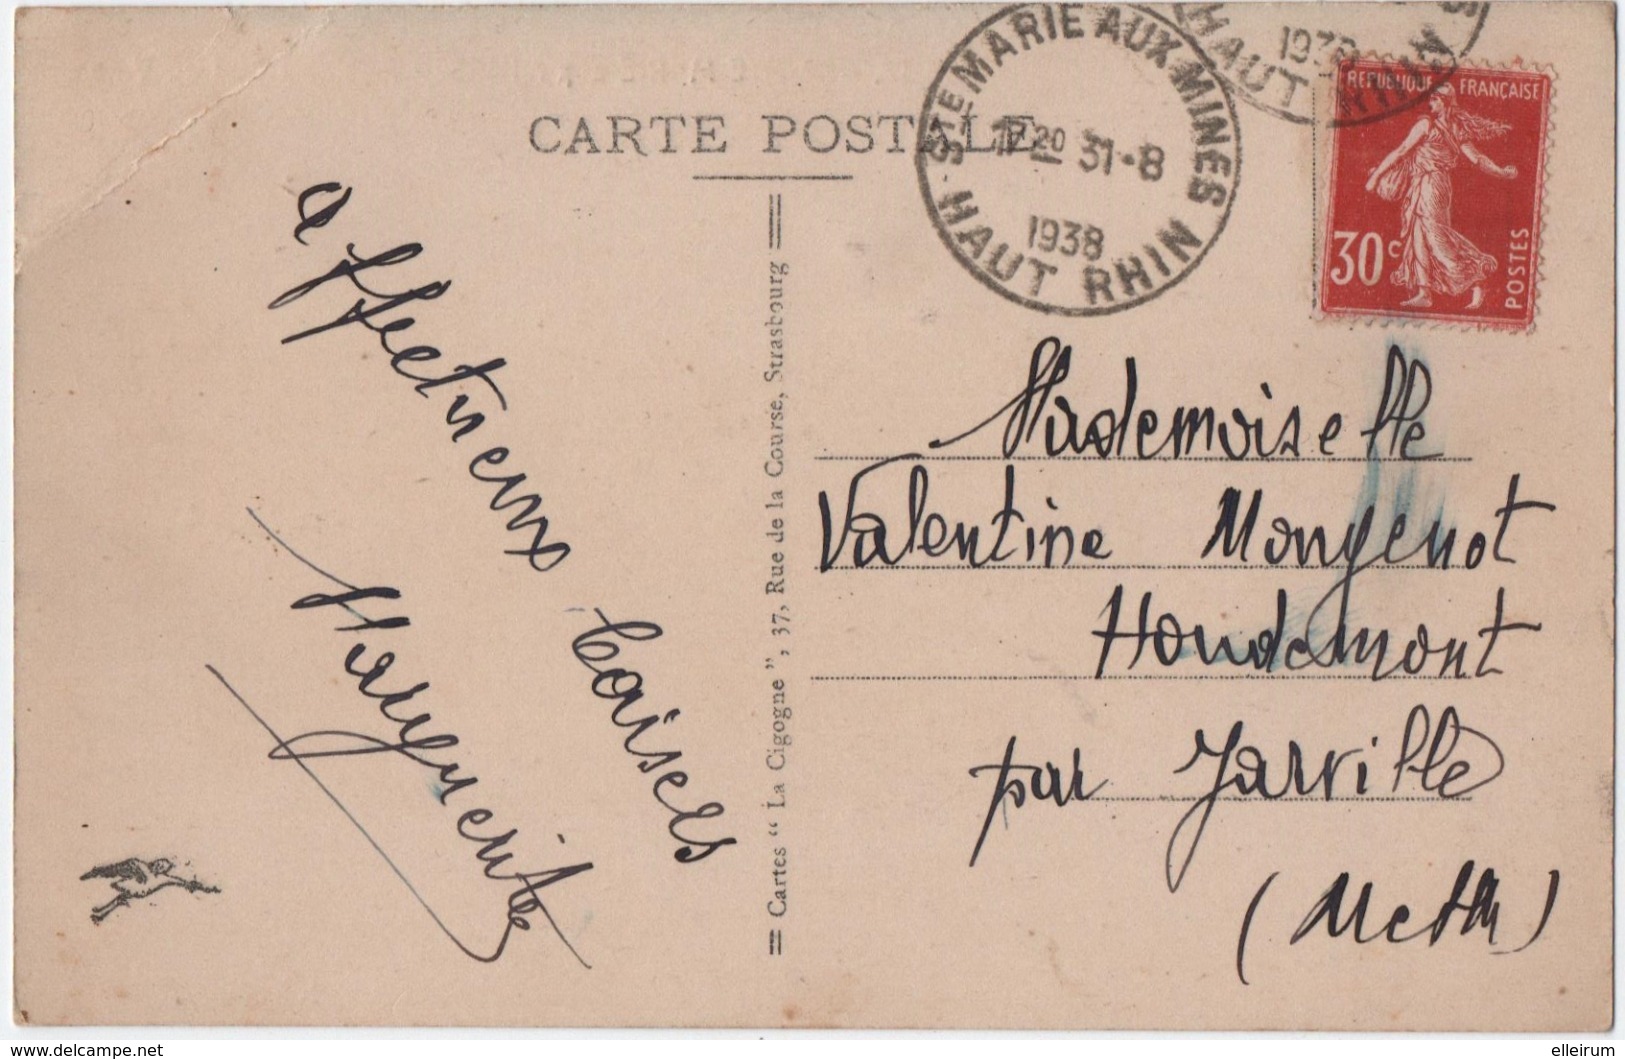 SAINTE-MARIE-aux-MINES (68) ANCIEN HOTEL De VILLE. 1939. CARTE COLORISEE. - Sainte-Croix-aux-Mines